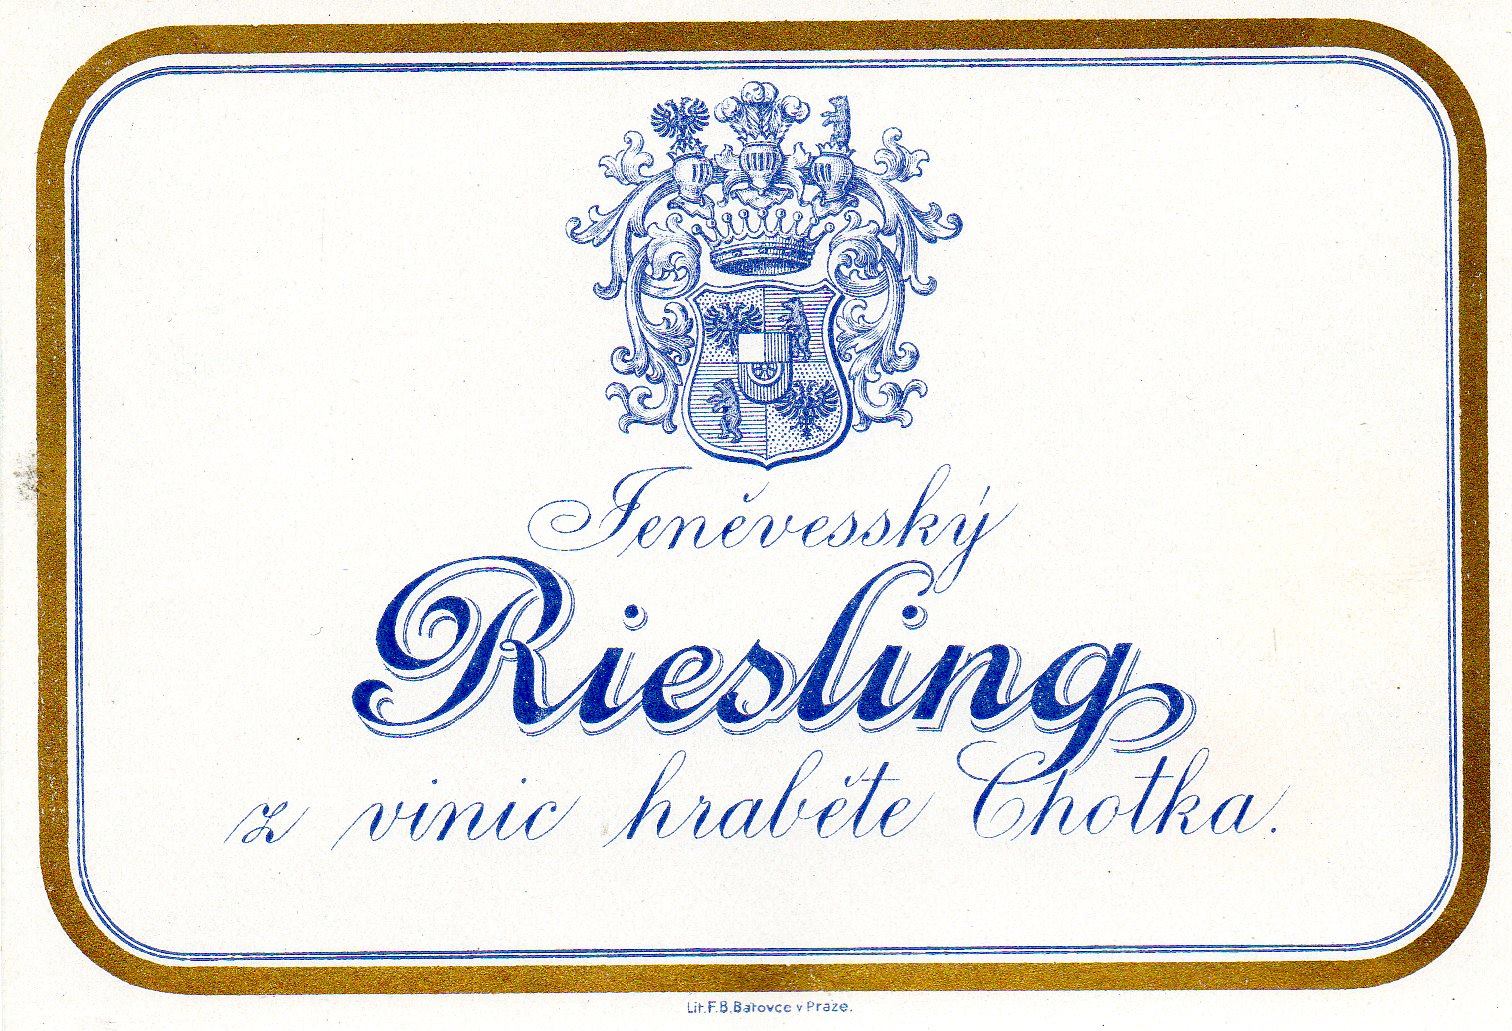 Jeněveský riesling z vinic hraběte Chotka